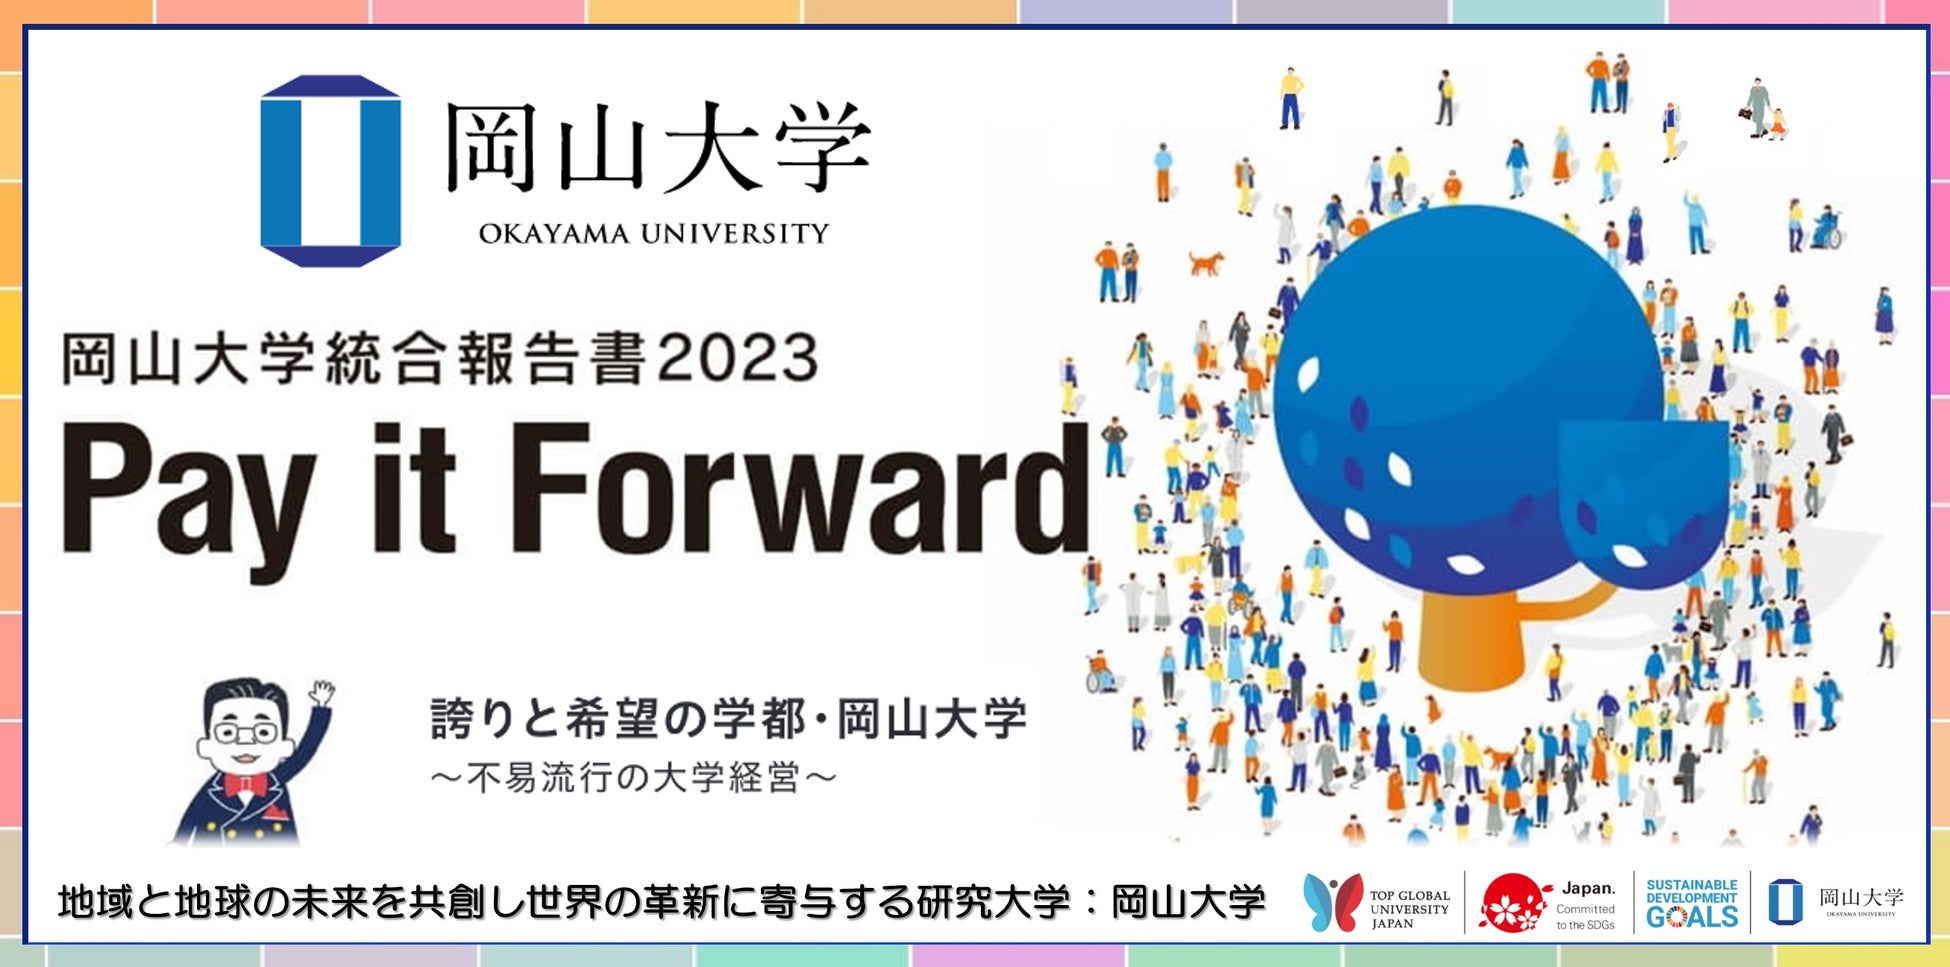 【岡山大学】「岡山大学統合報告書2023 Pay it Forward」を発行しました